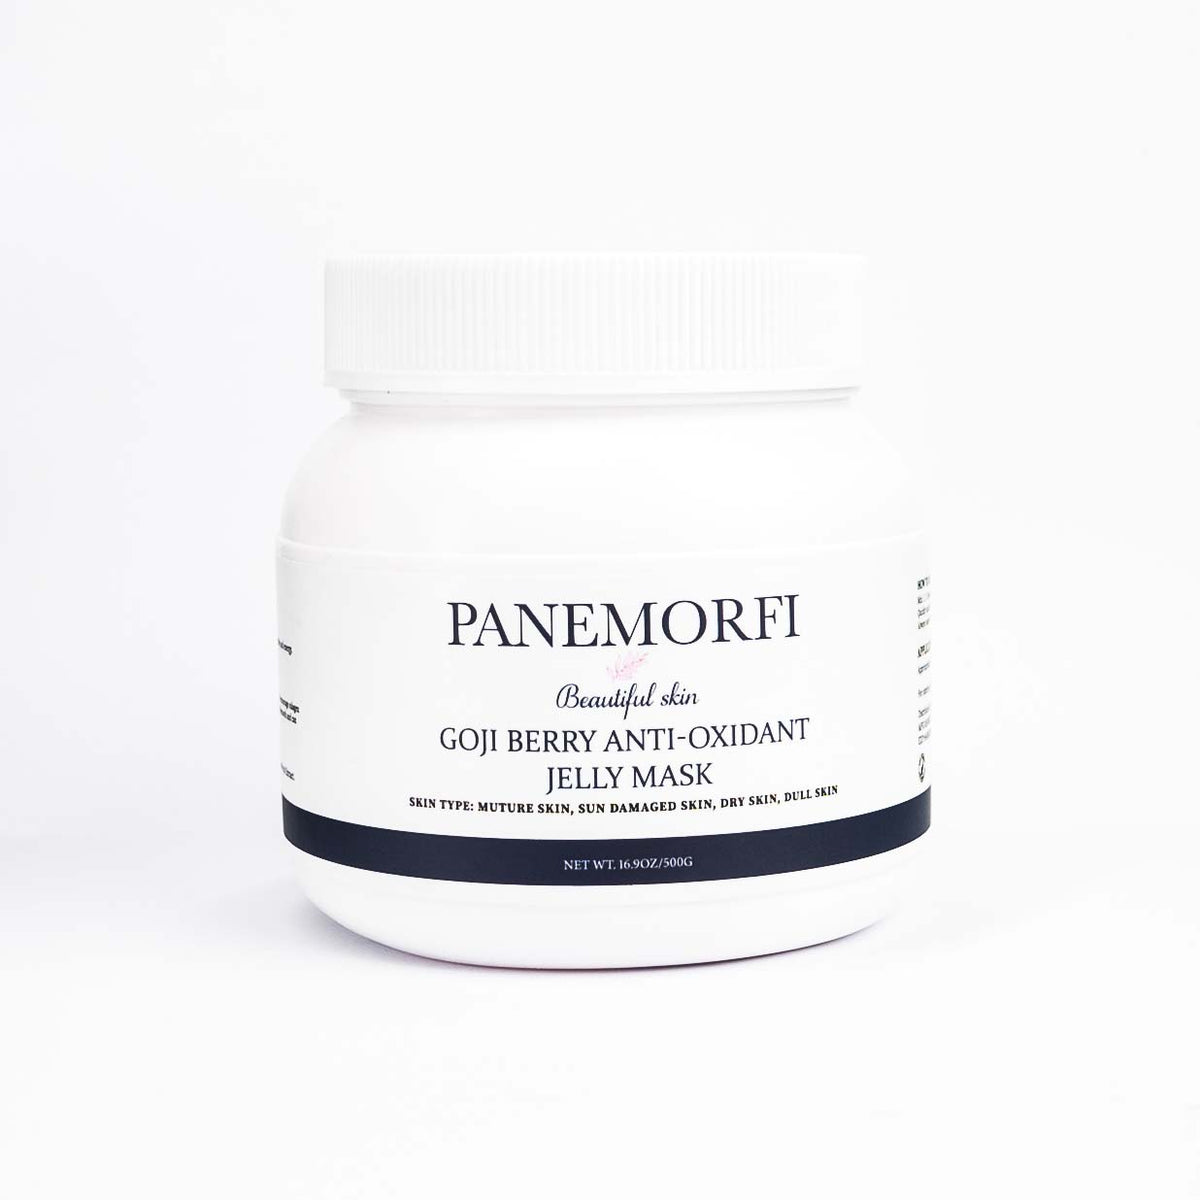 PANEMORFI - GOJI BERRY ANTI-OXIDANT JELLY MASK - Luna Beauty Supplies